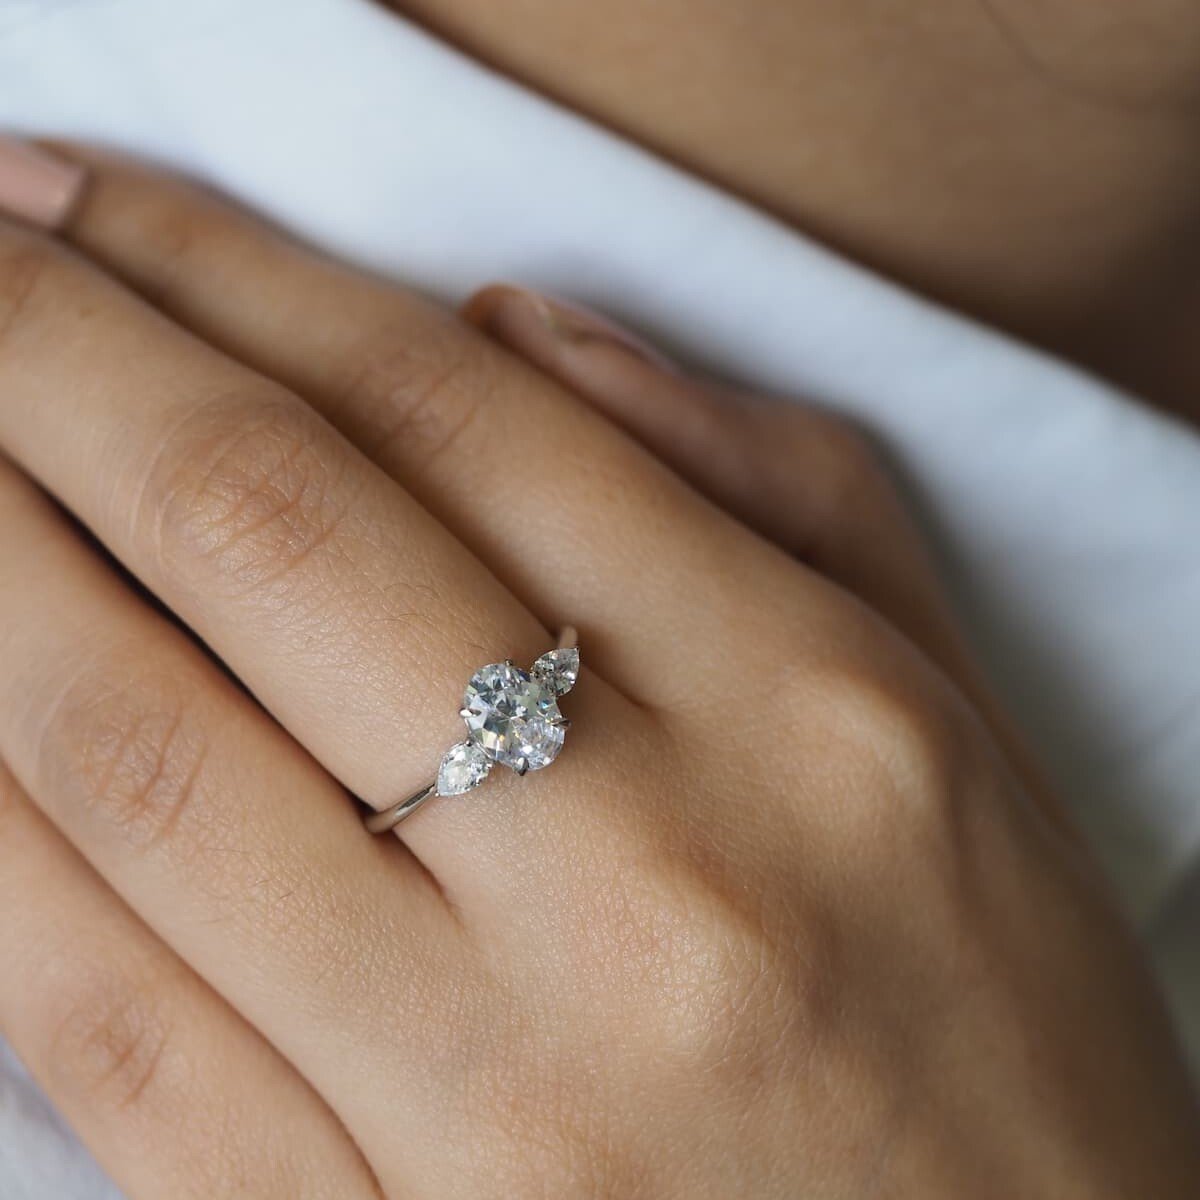 Lisa Diamond ring shown on hand of model